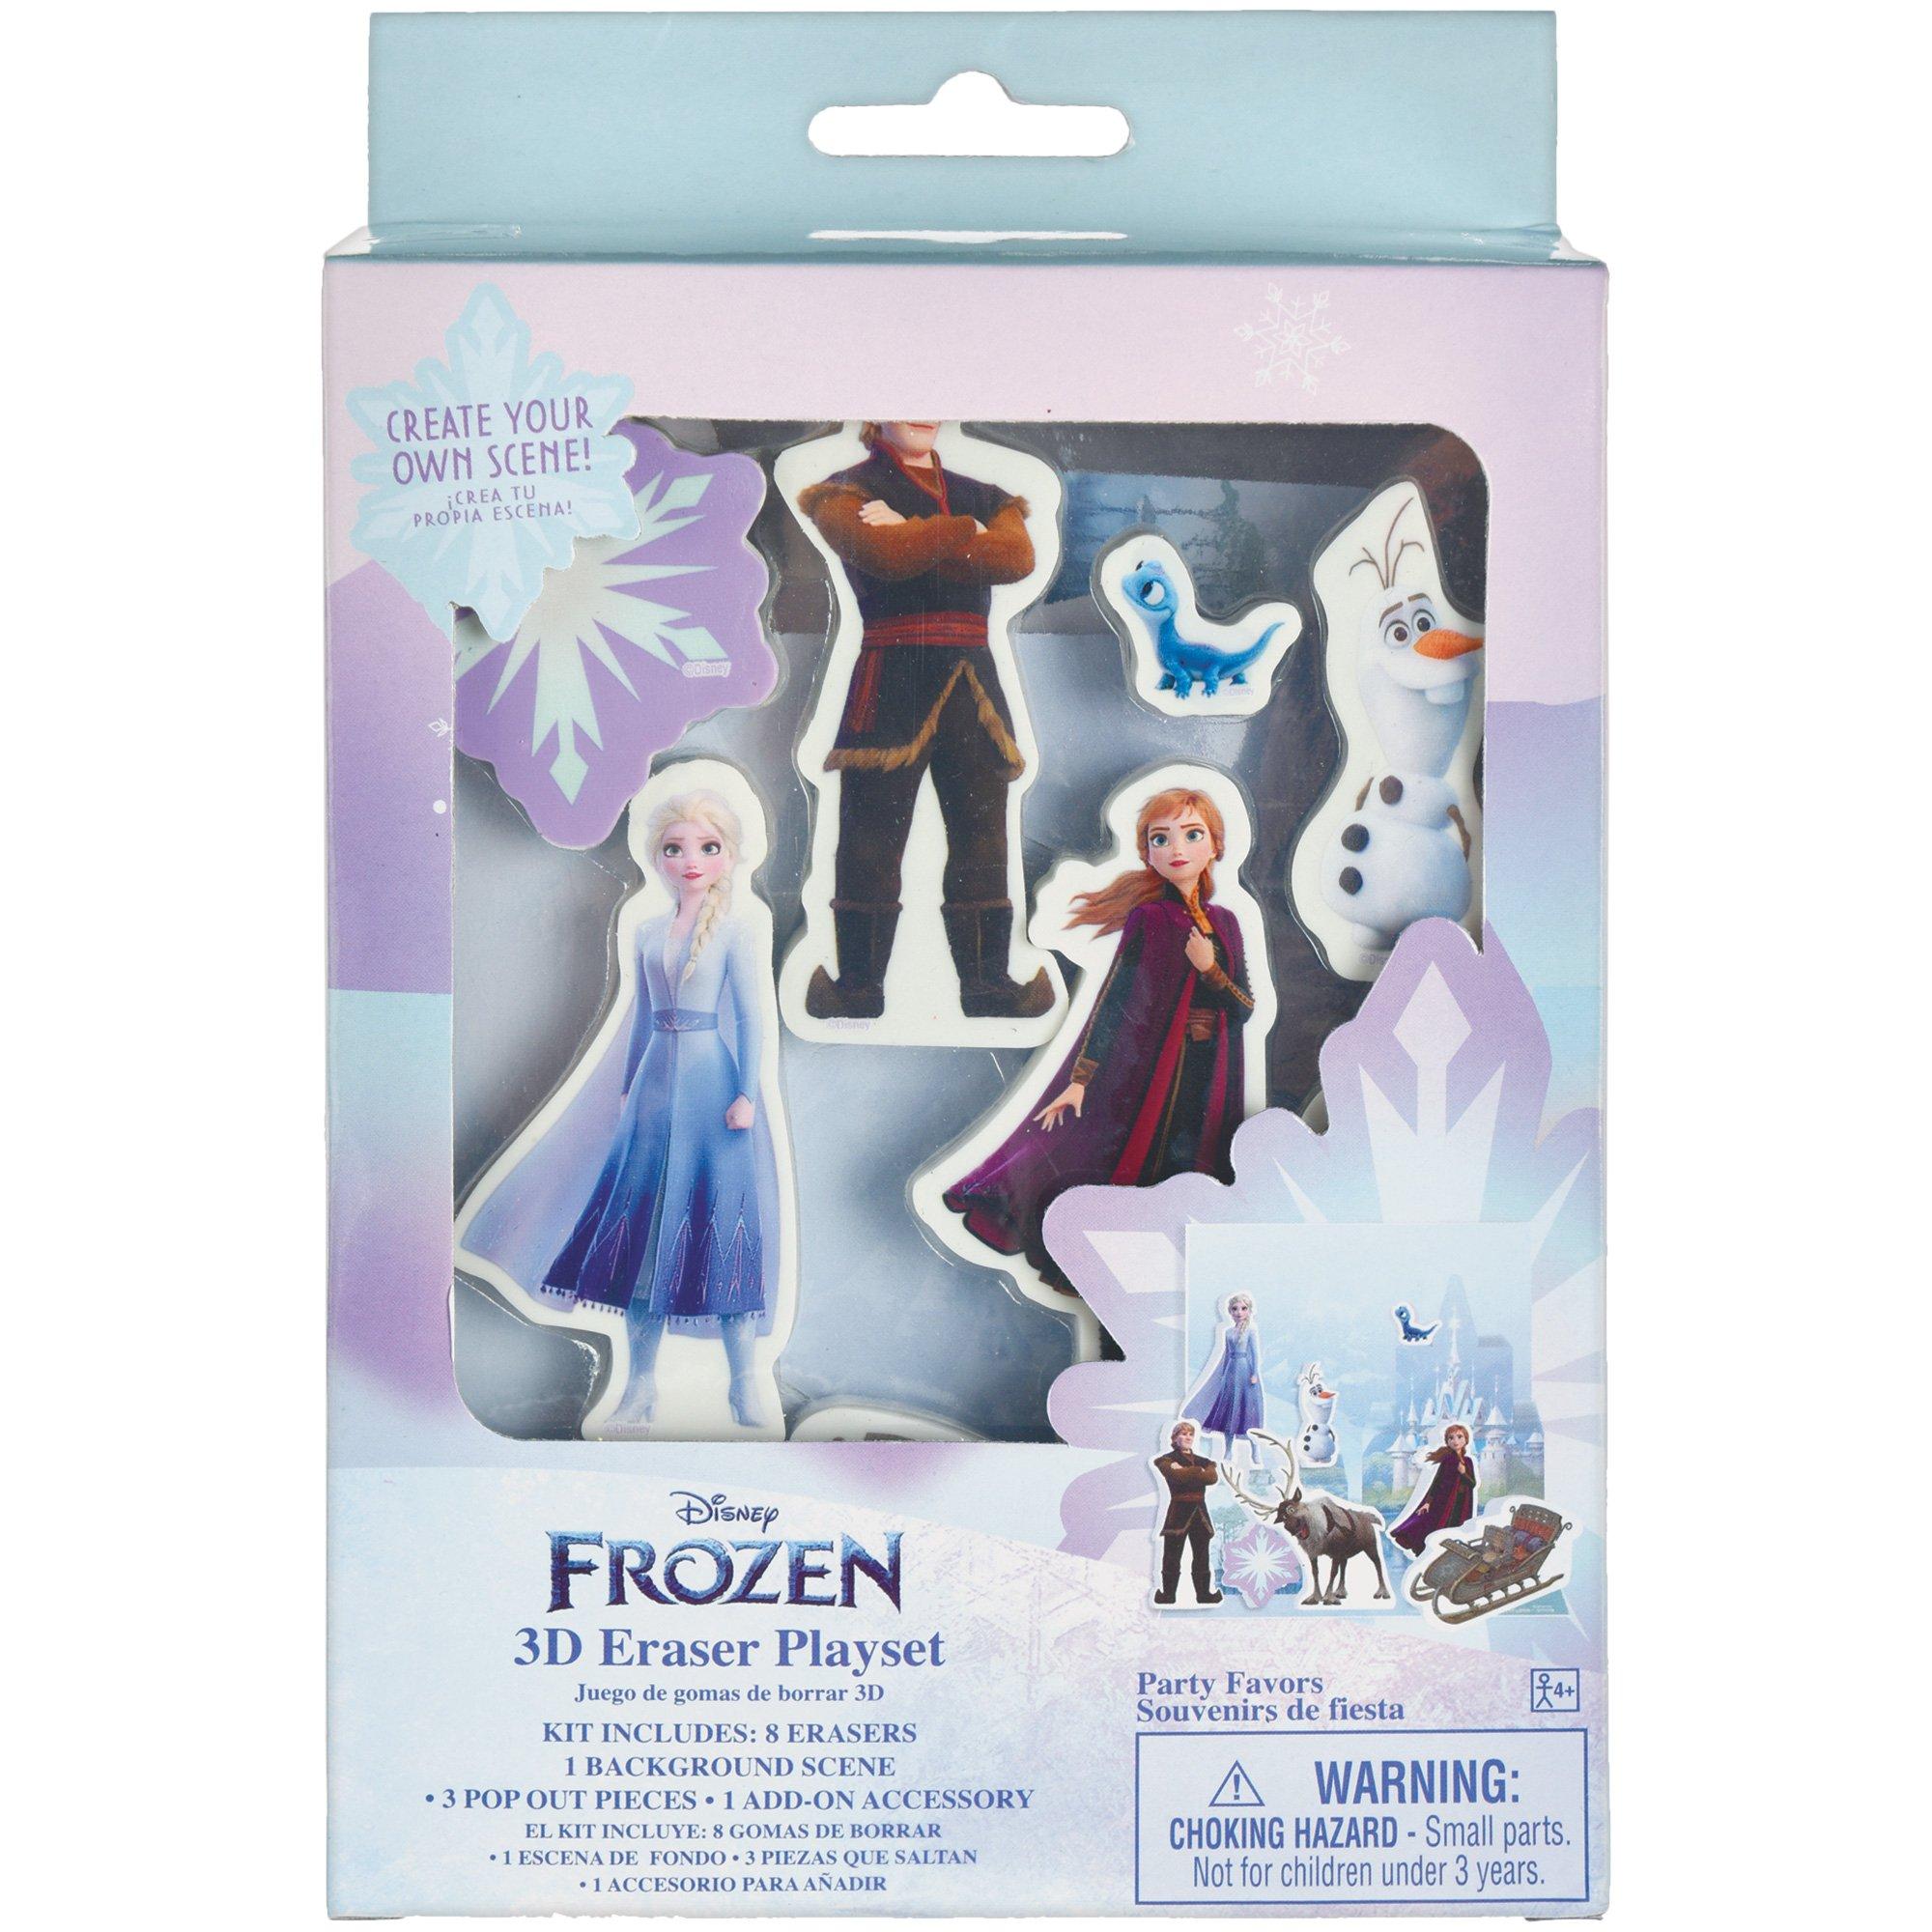 Bộ tẩy xóa Frozen 2 3D: Bộ tẩy xóa của Frozen 2 3D chắc chắn sẽ làm hài lòng các fan của bộ phim. Nếu bạn là một trong số đó, hãy xem hình ảnh để tìm hiểu về bộ tẩy xóa này và có thể sử dụng nó để tạo ra những tác phẩm sáng tạo.